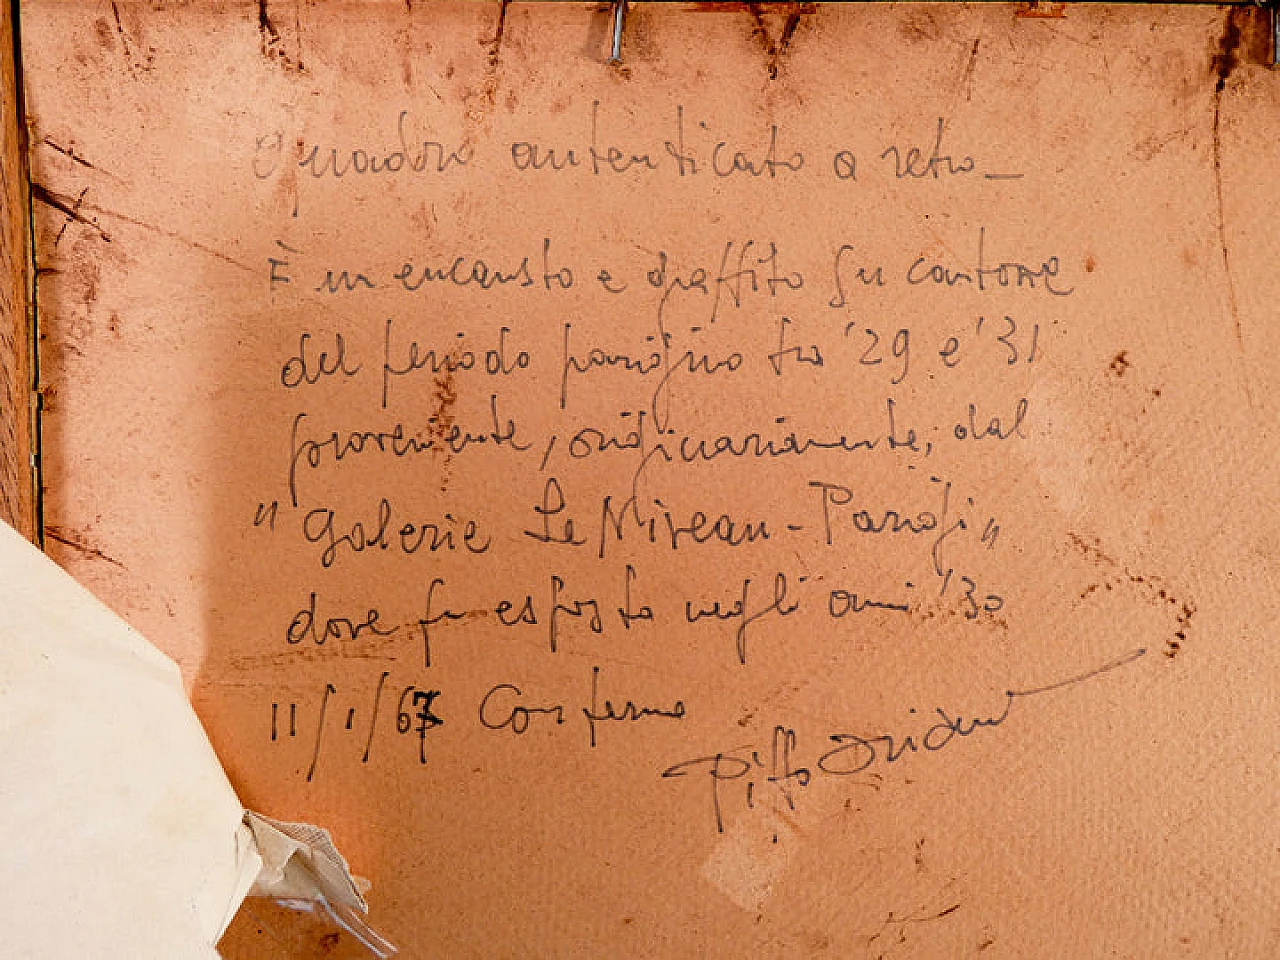 P. Oriani, Objets sur la table, encaustic painting on cardboard, 1930 17